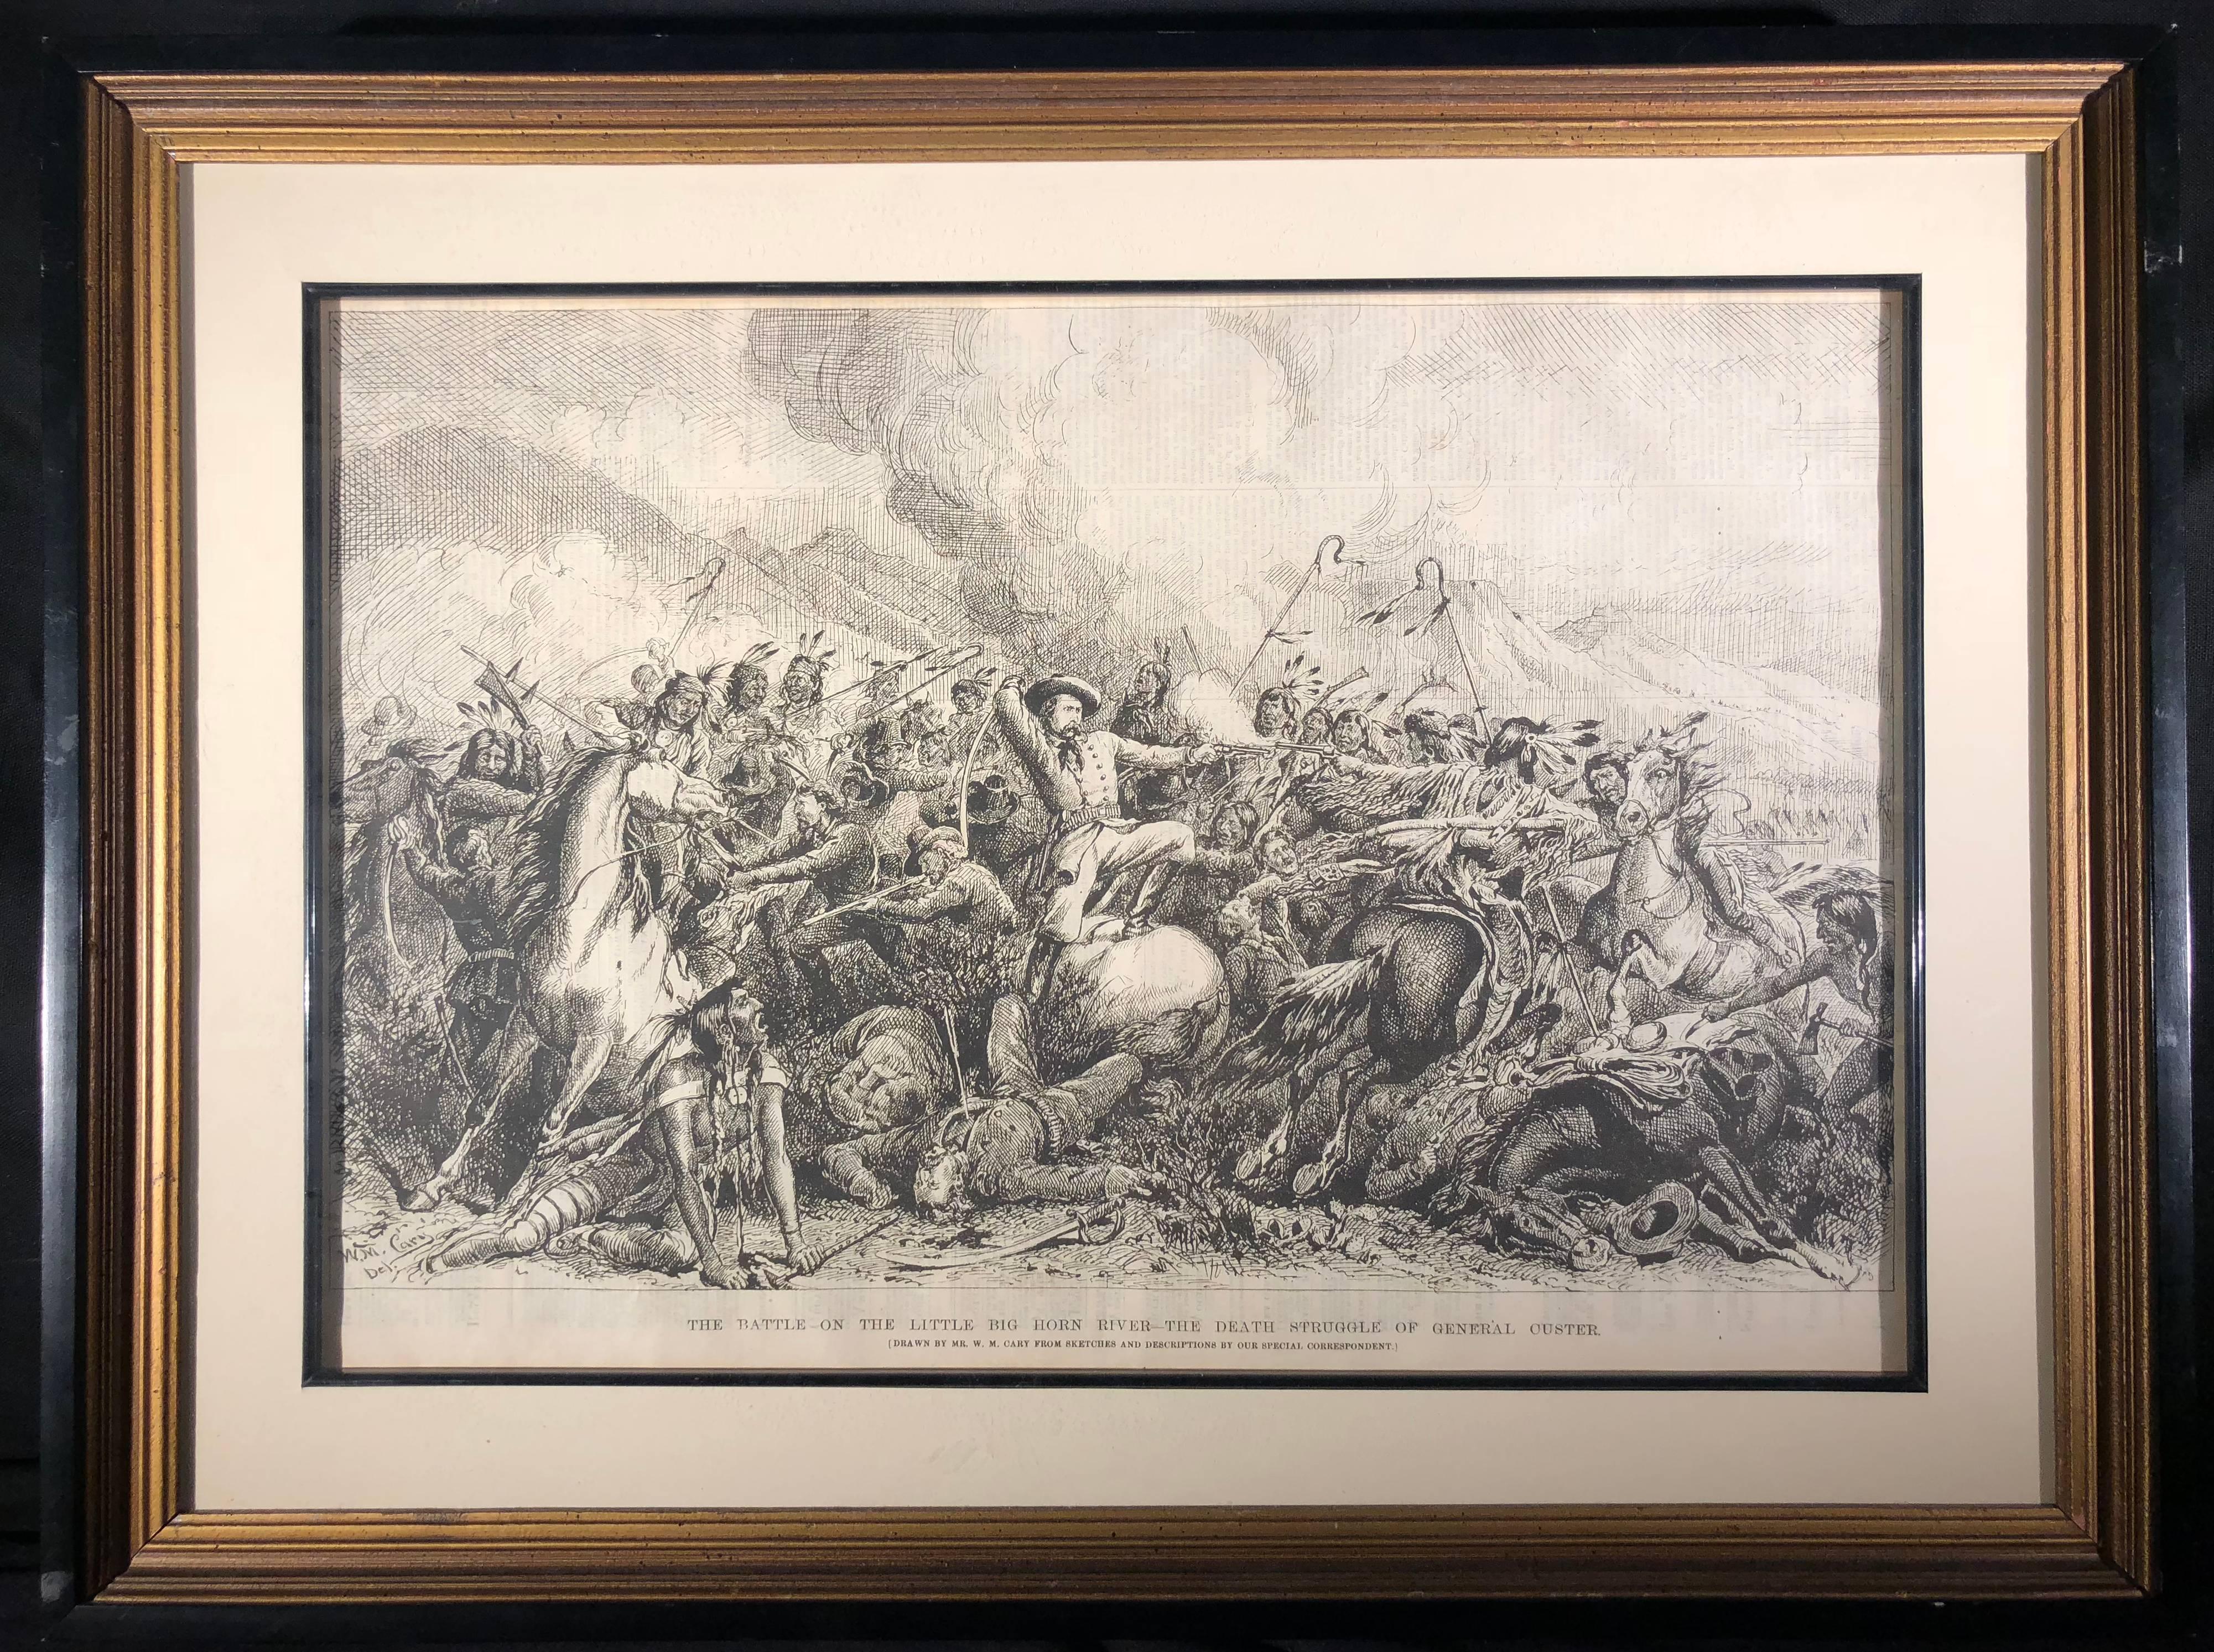 The Battle of Little Big Horn River (Custer Massacre, June 25 1876) - Print by William De La Montagne Cary 